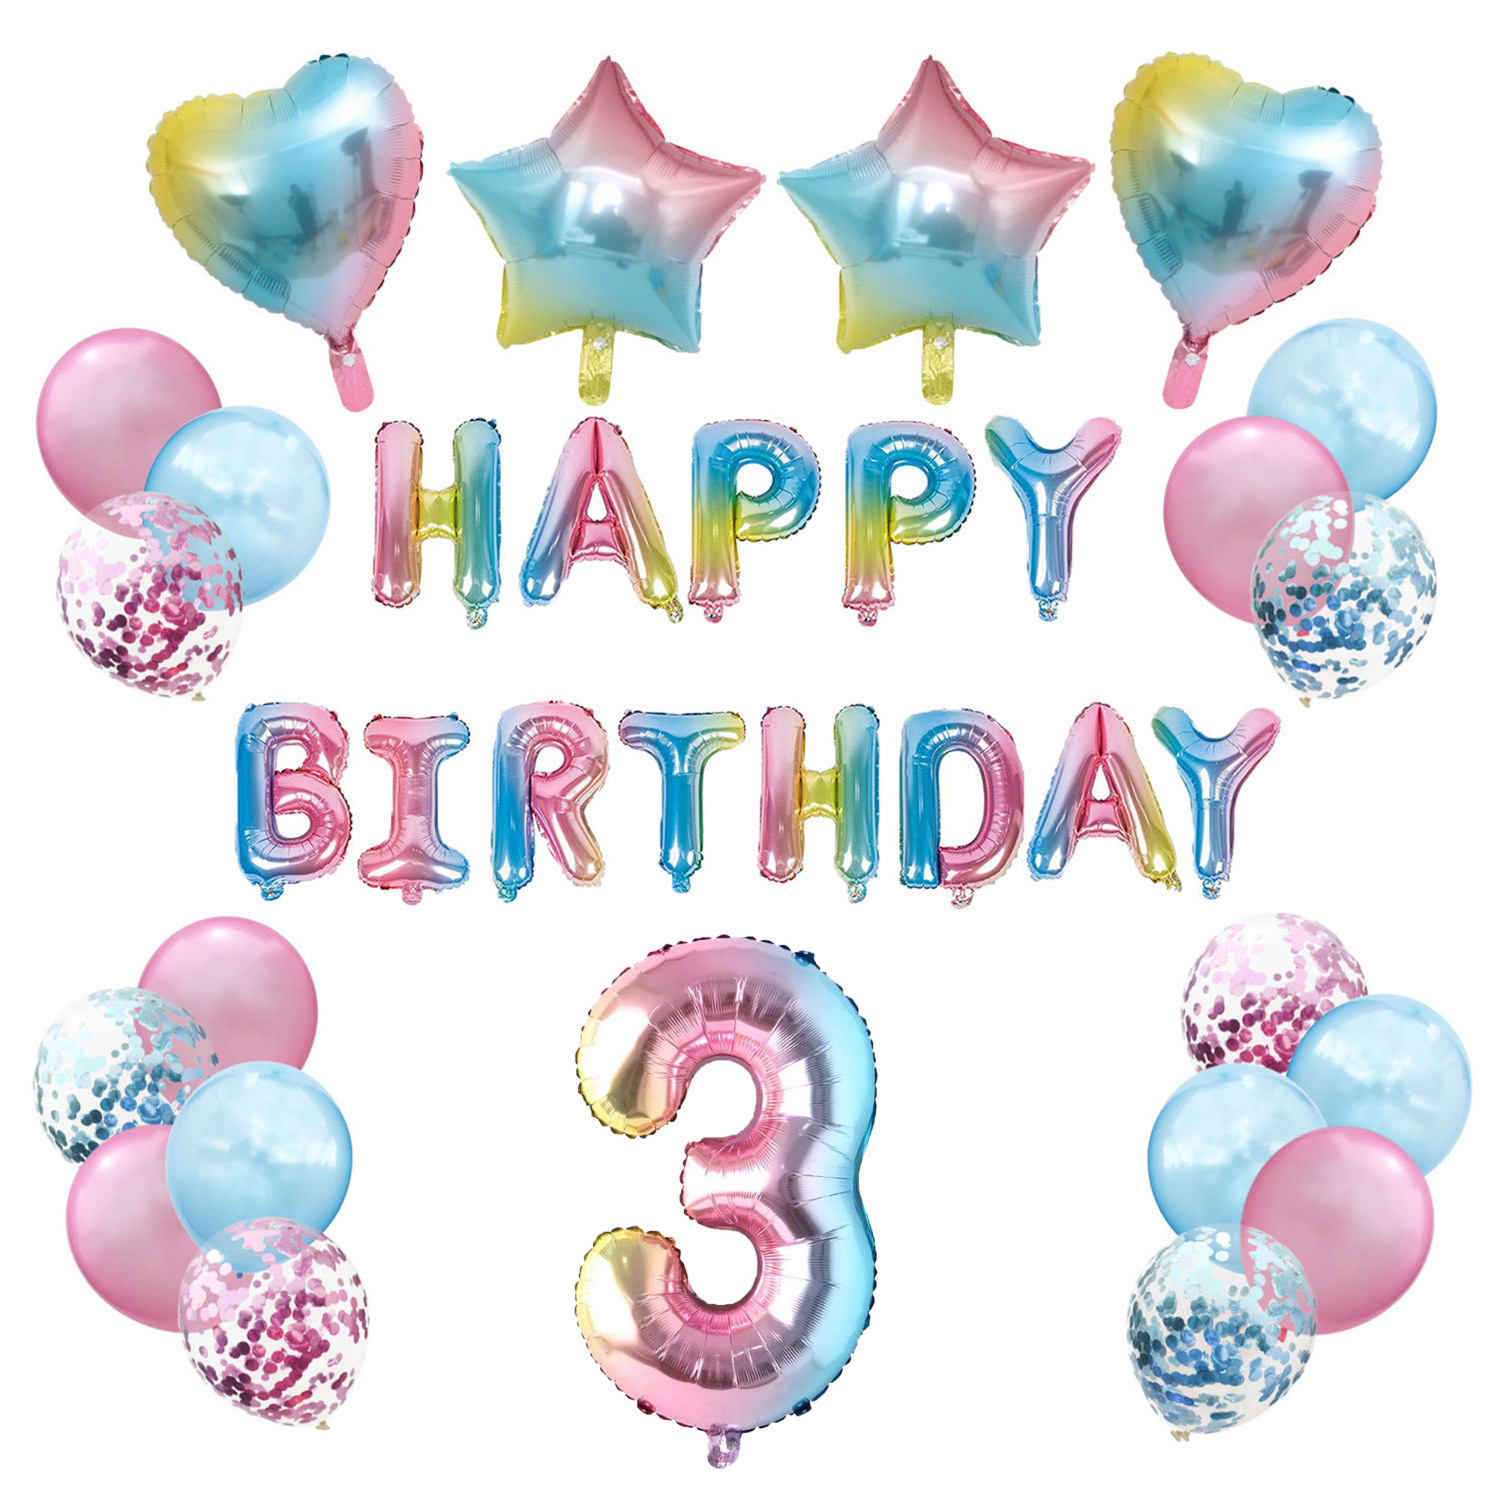 3. Geburtstag Party Deko Set - Happy Birthday + Zahl 3 bei Happy Birthday Bilder Kinder 2 Jahre